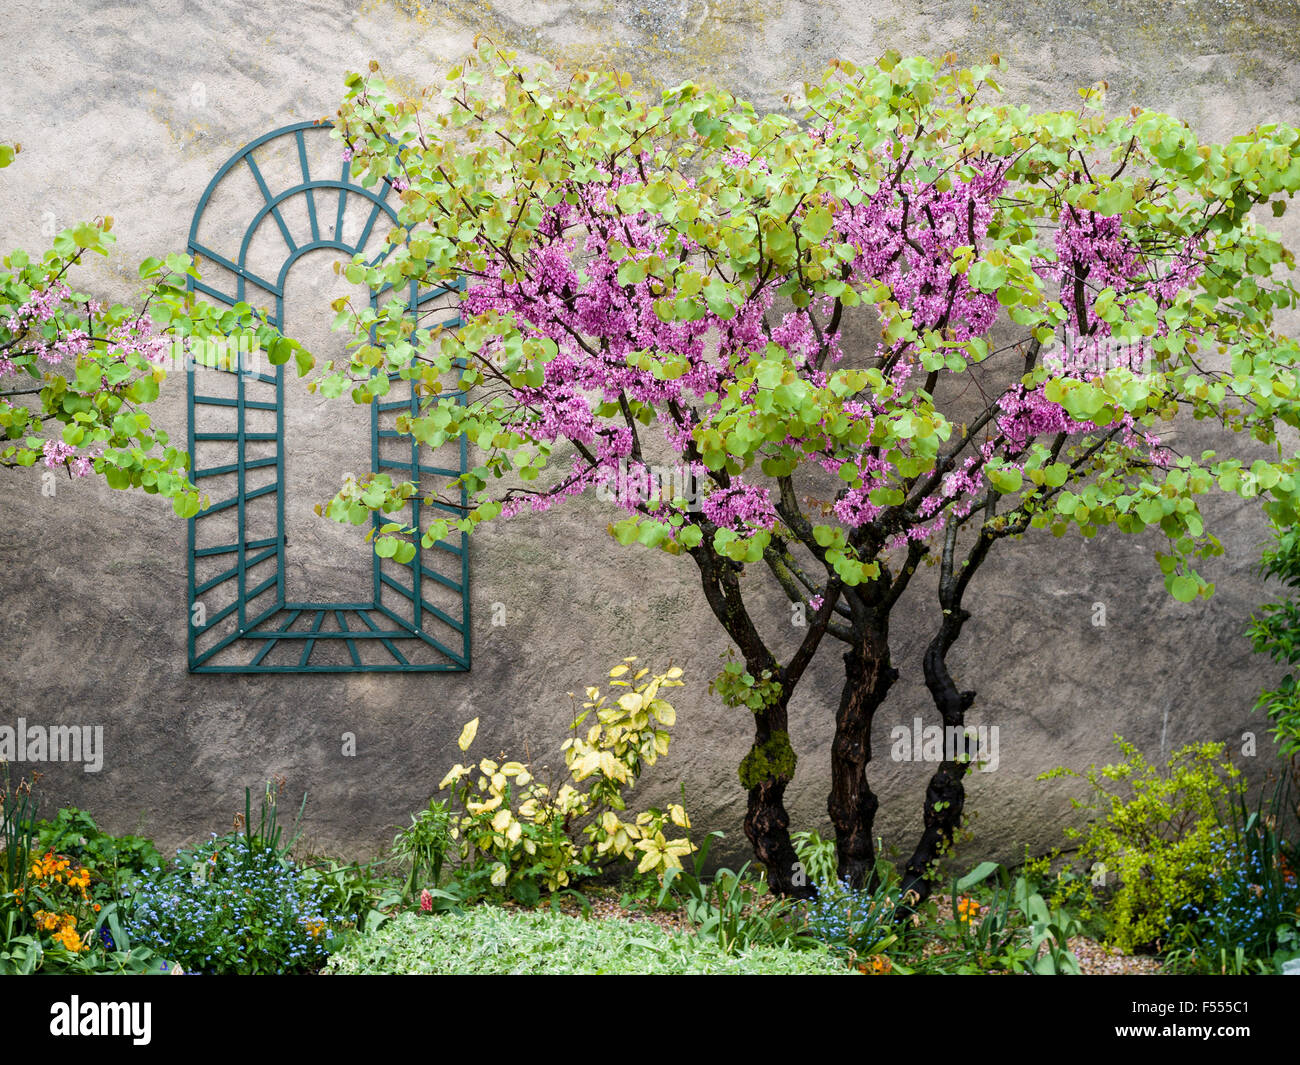 Jardin mural. Un petit jardin construite en un mur rugueux au printemps la floraison. Un arbre Redbud européenne fleurs. Banque D'Images